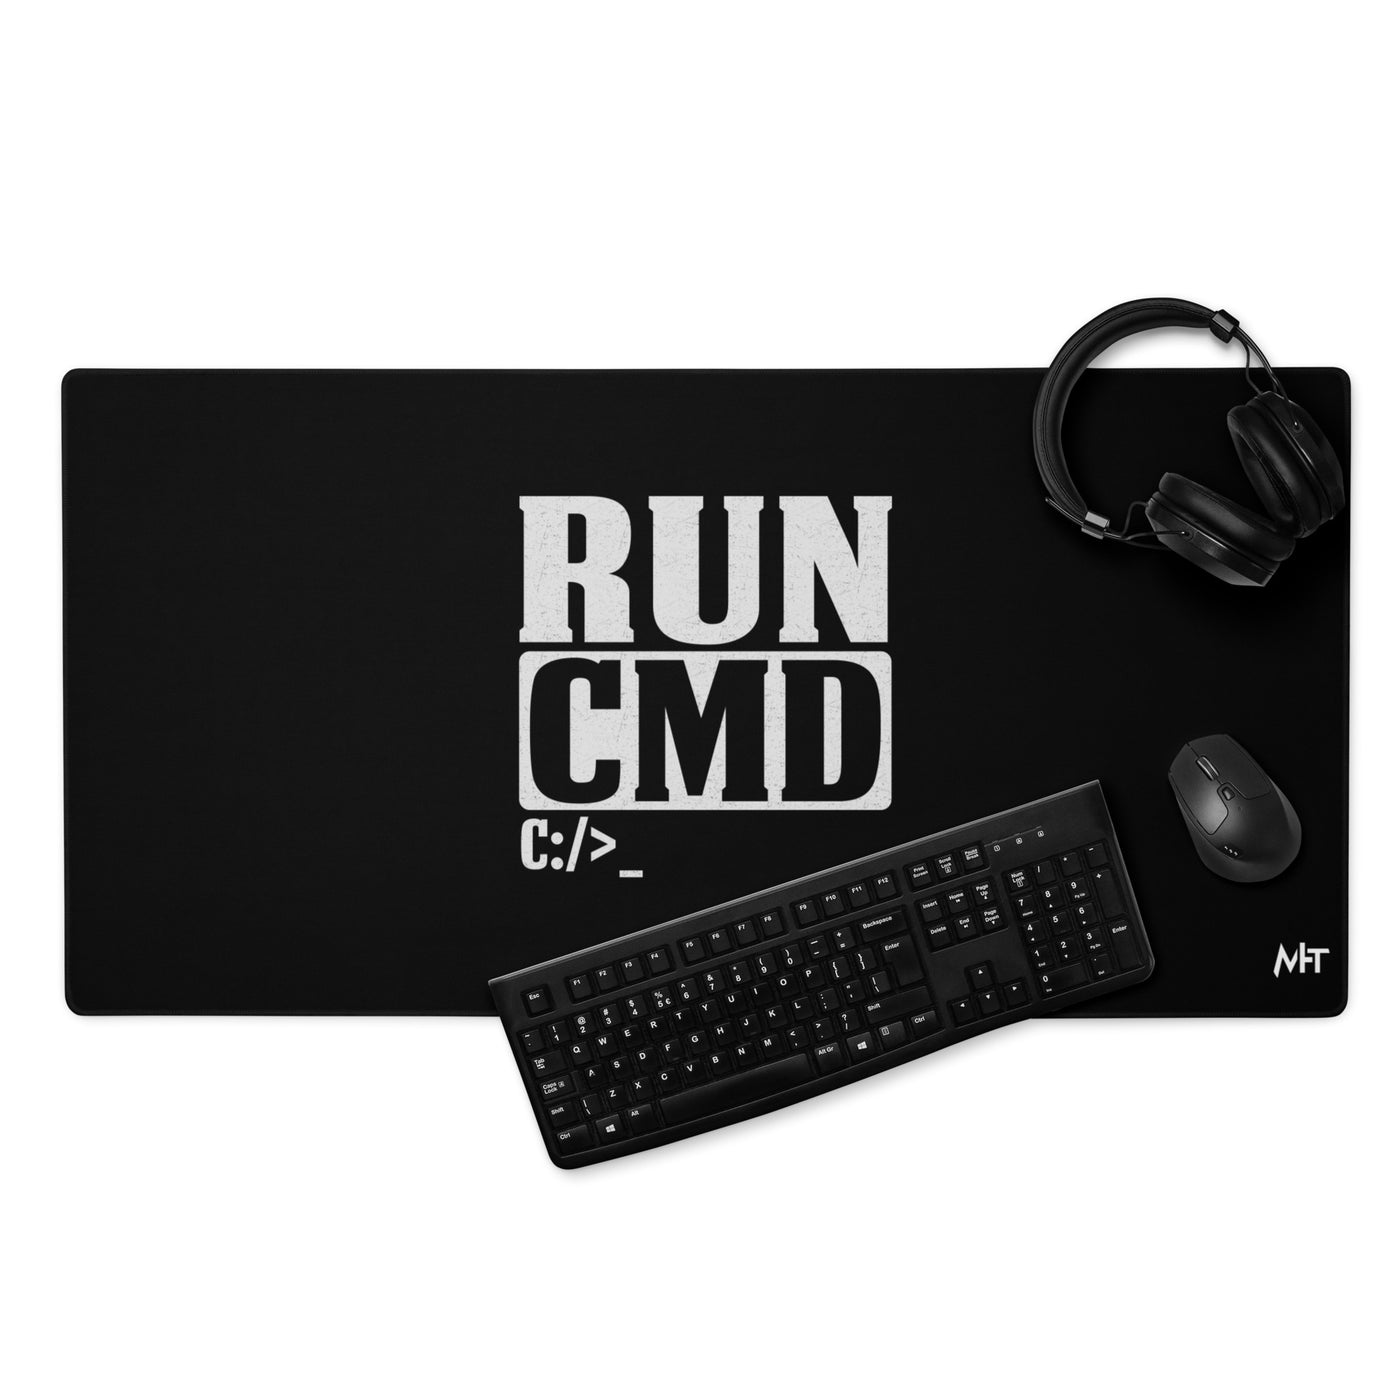 Run CMD C:/>_ - Desk Mat